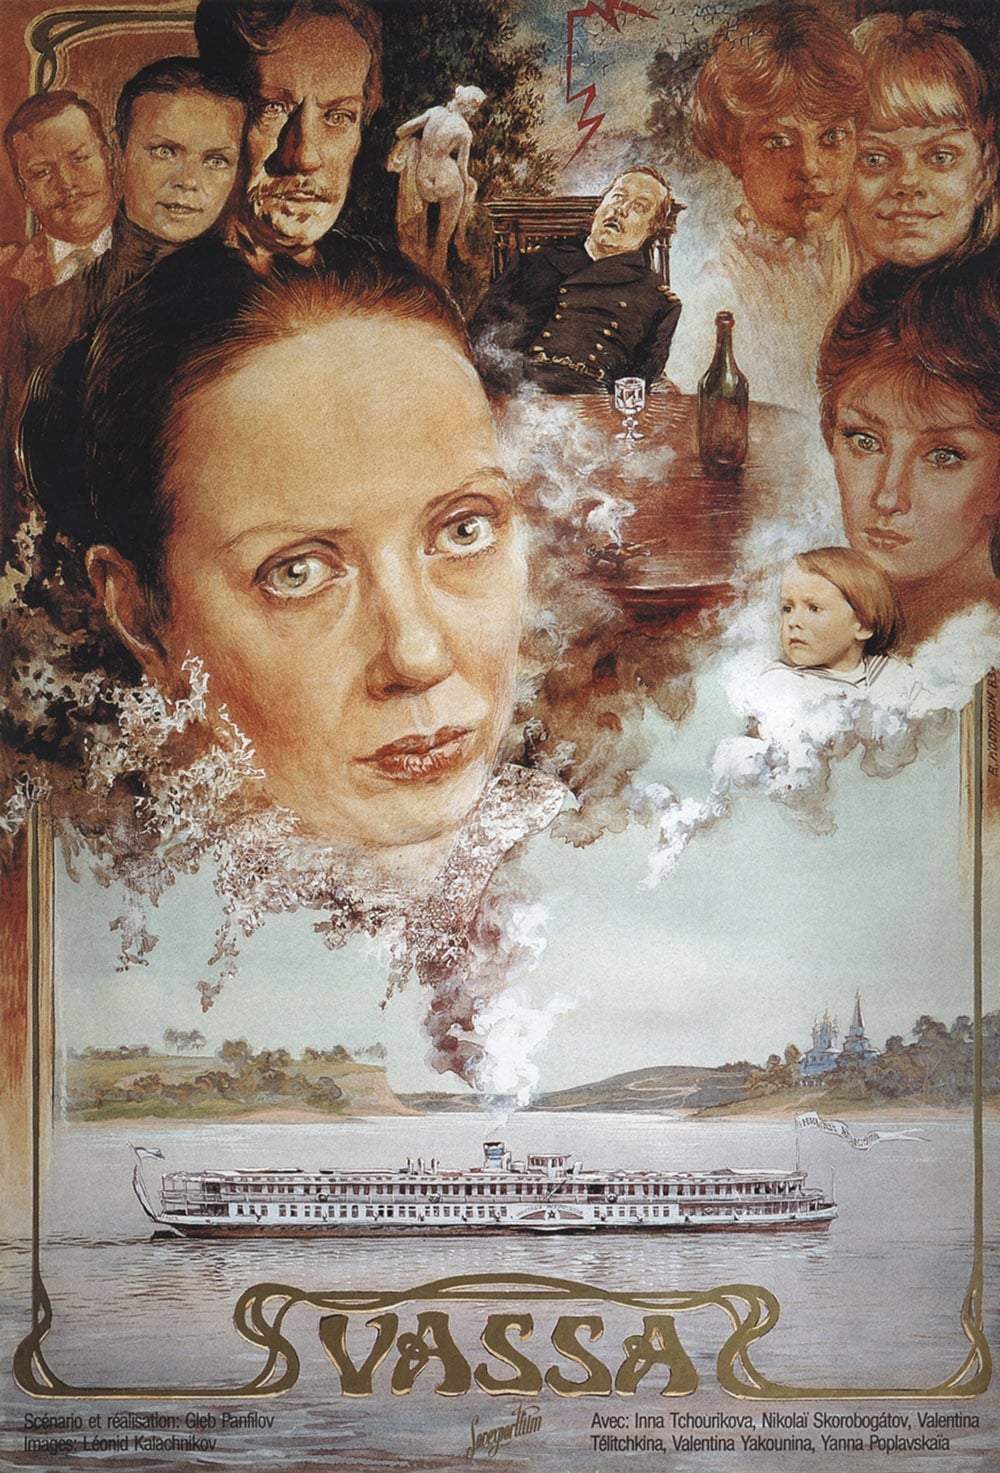 Vassa (1983)